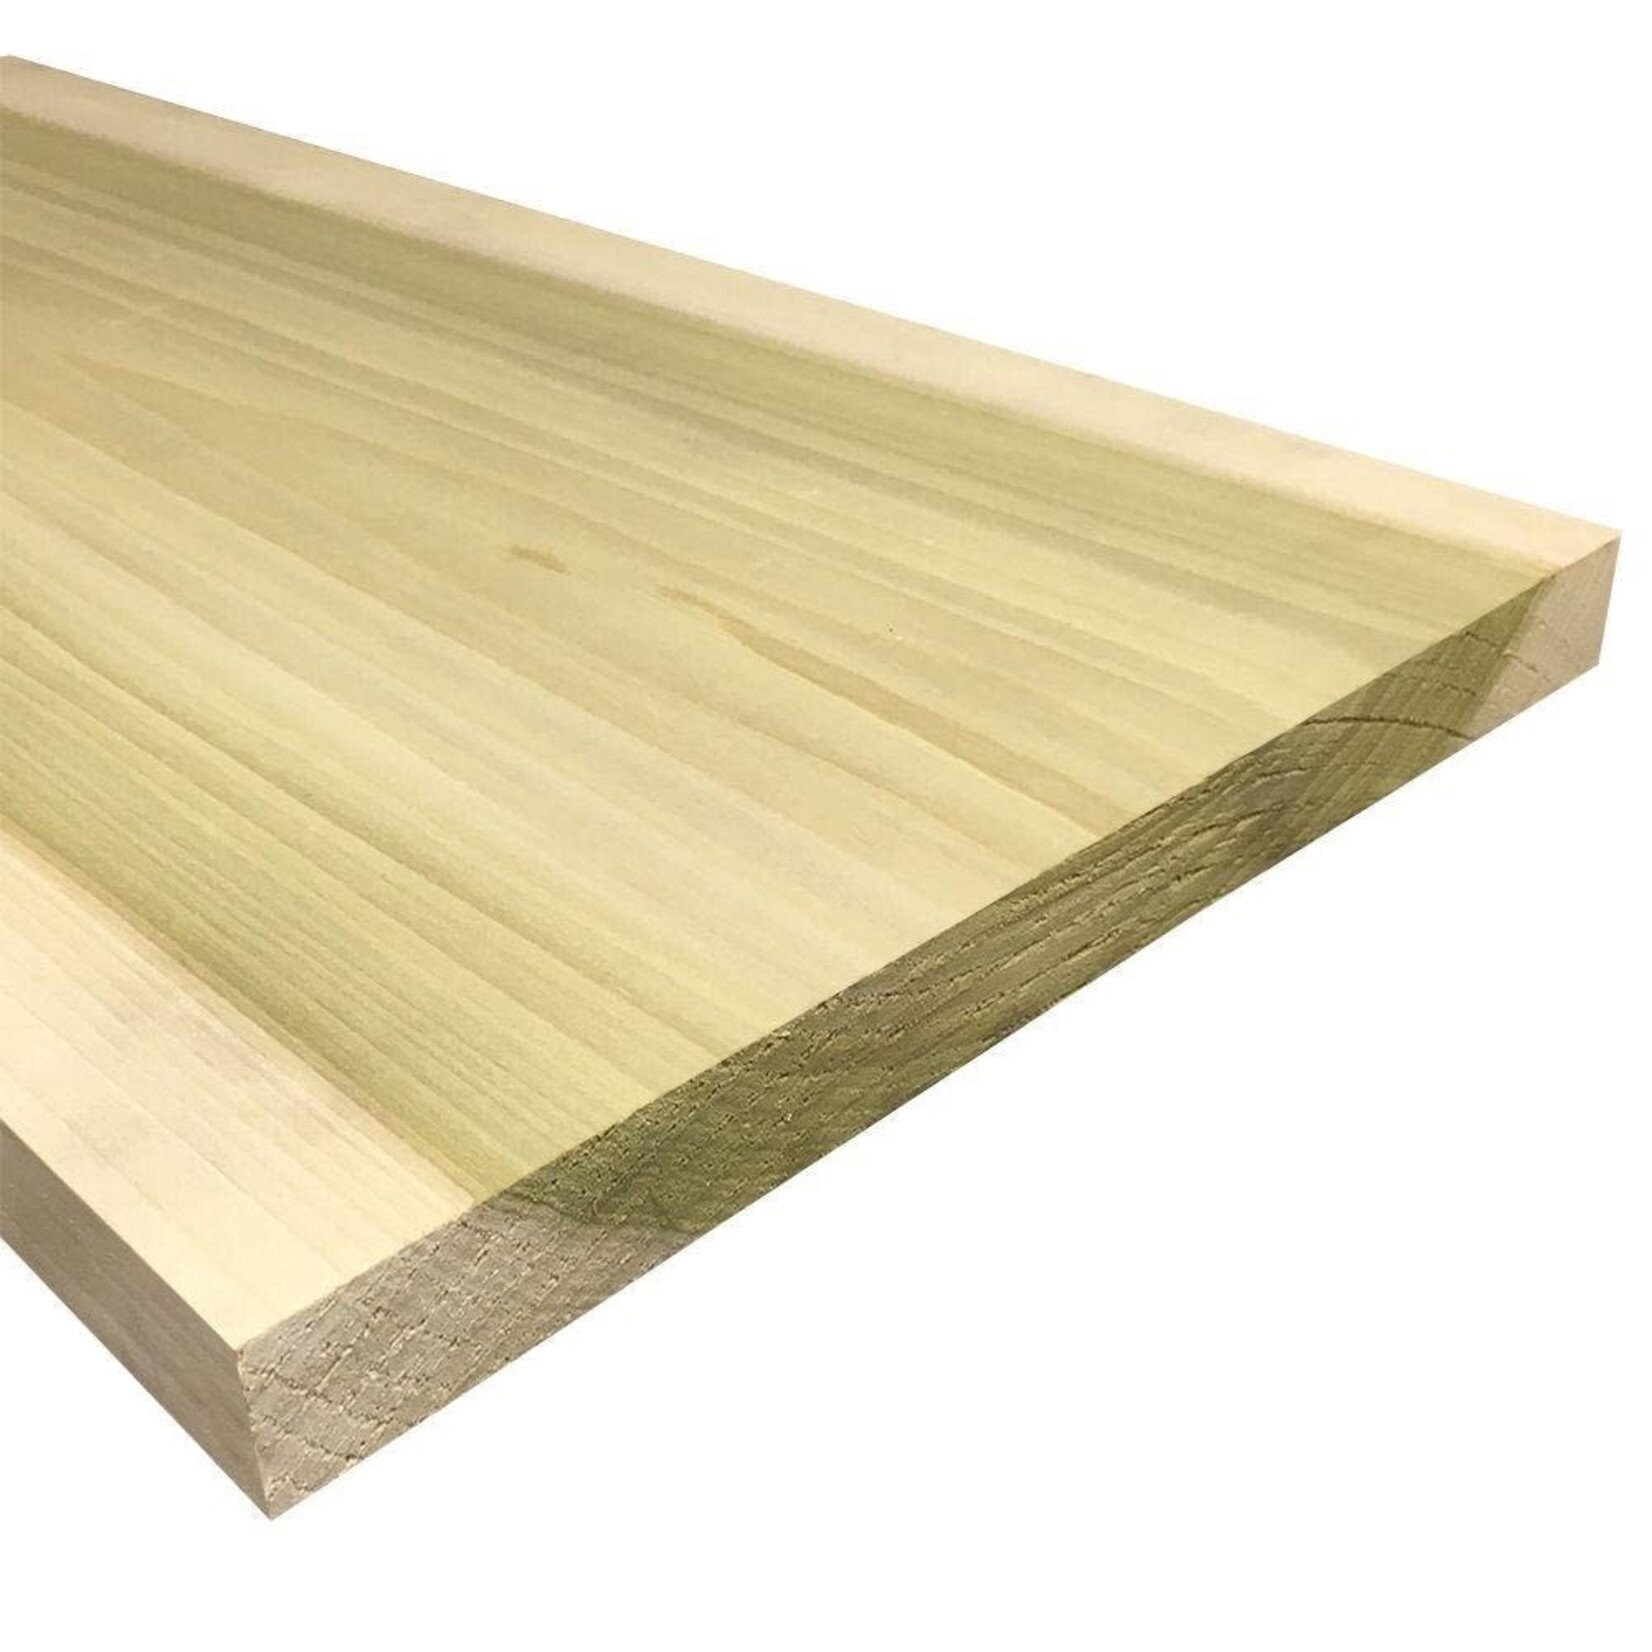 A&M Supply Poplar Lumber 3/4" x 8" x 9 Foot